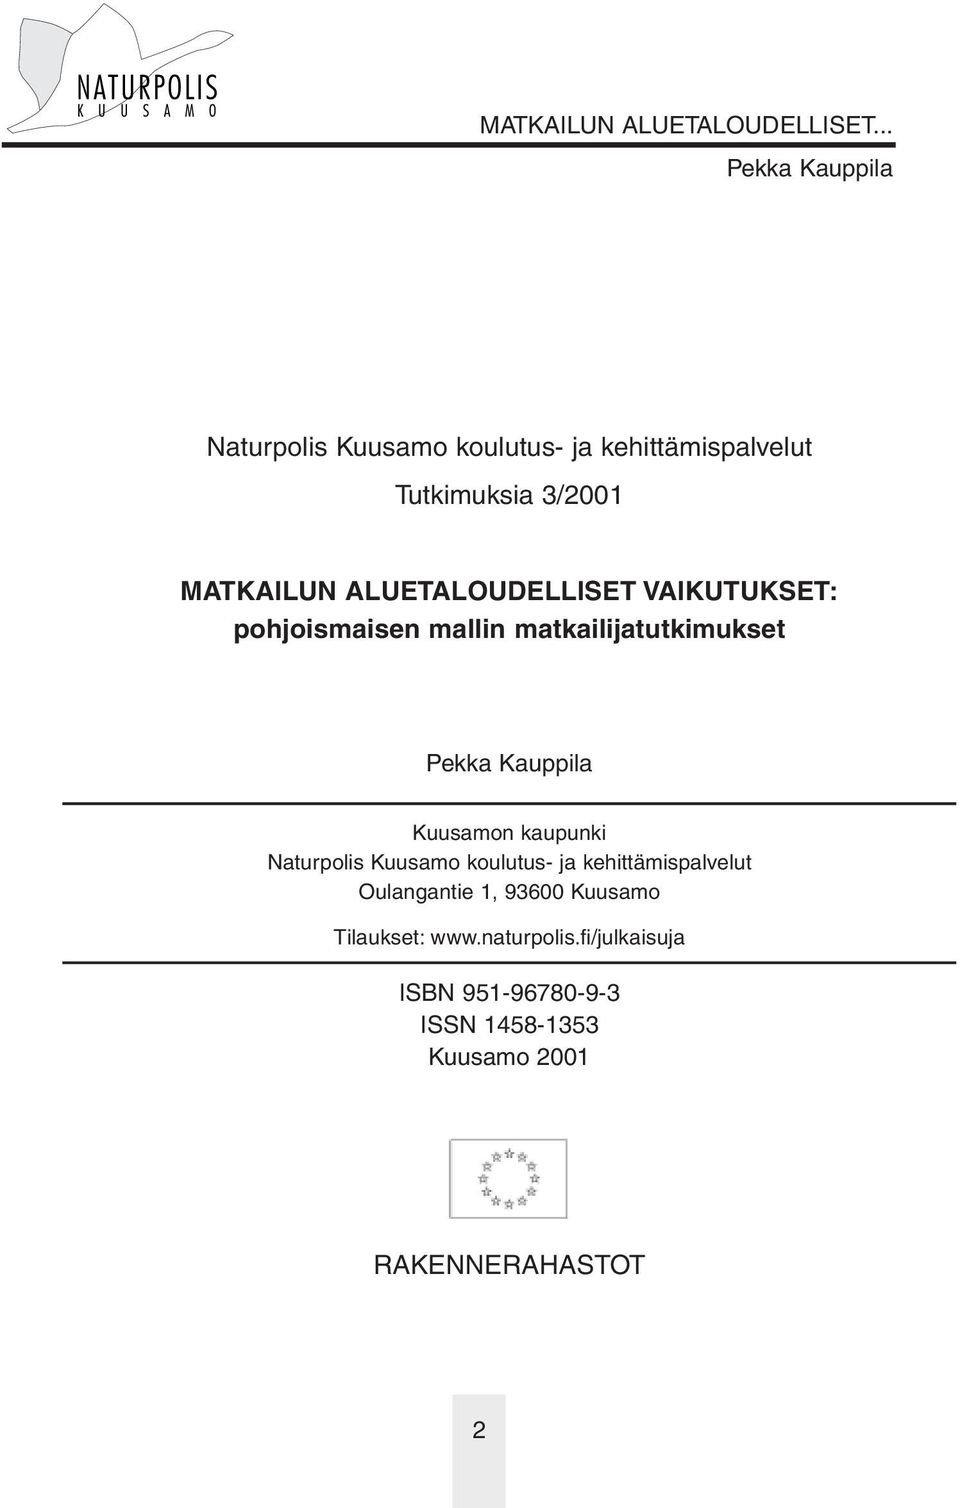 kaupunki Naturpolis Kuusamo koulutus- ja kehittämispalvelut Oulangantie 1, 93600 Kuusamo